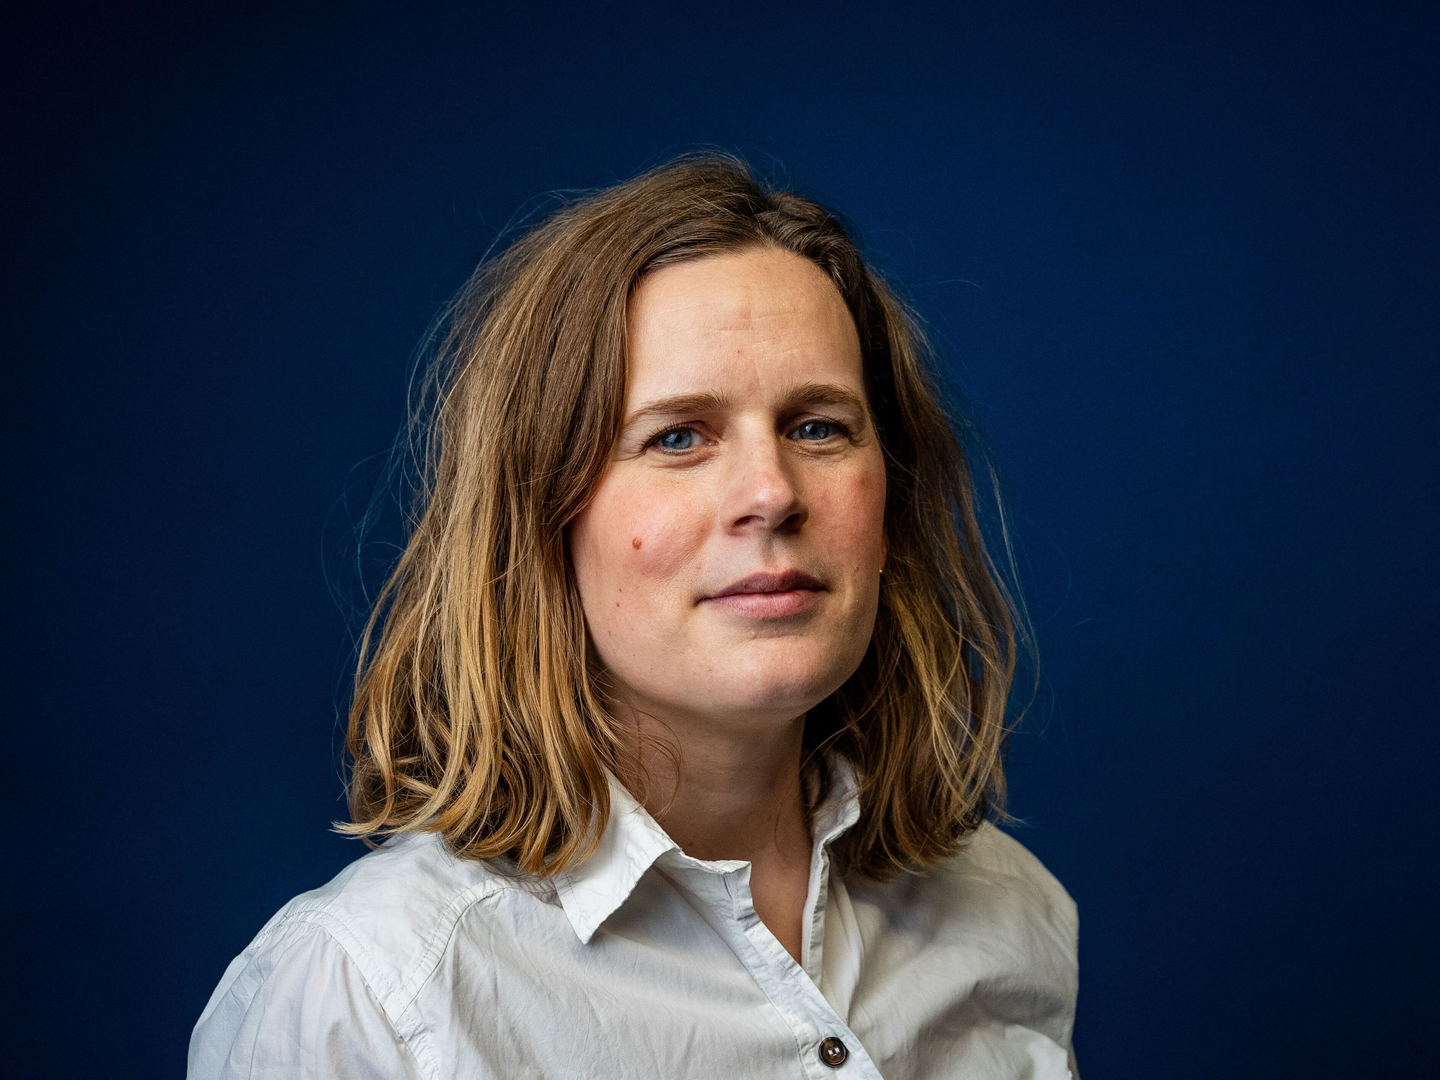 Ulla Ewald Stigel er ny forlagsredaktør på Zetland Bøger. I løbet af året vil hun overtage ansvaret for bogforretningen. | Foto: Kaare Sørensen